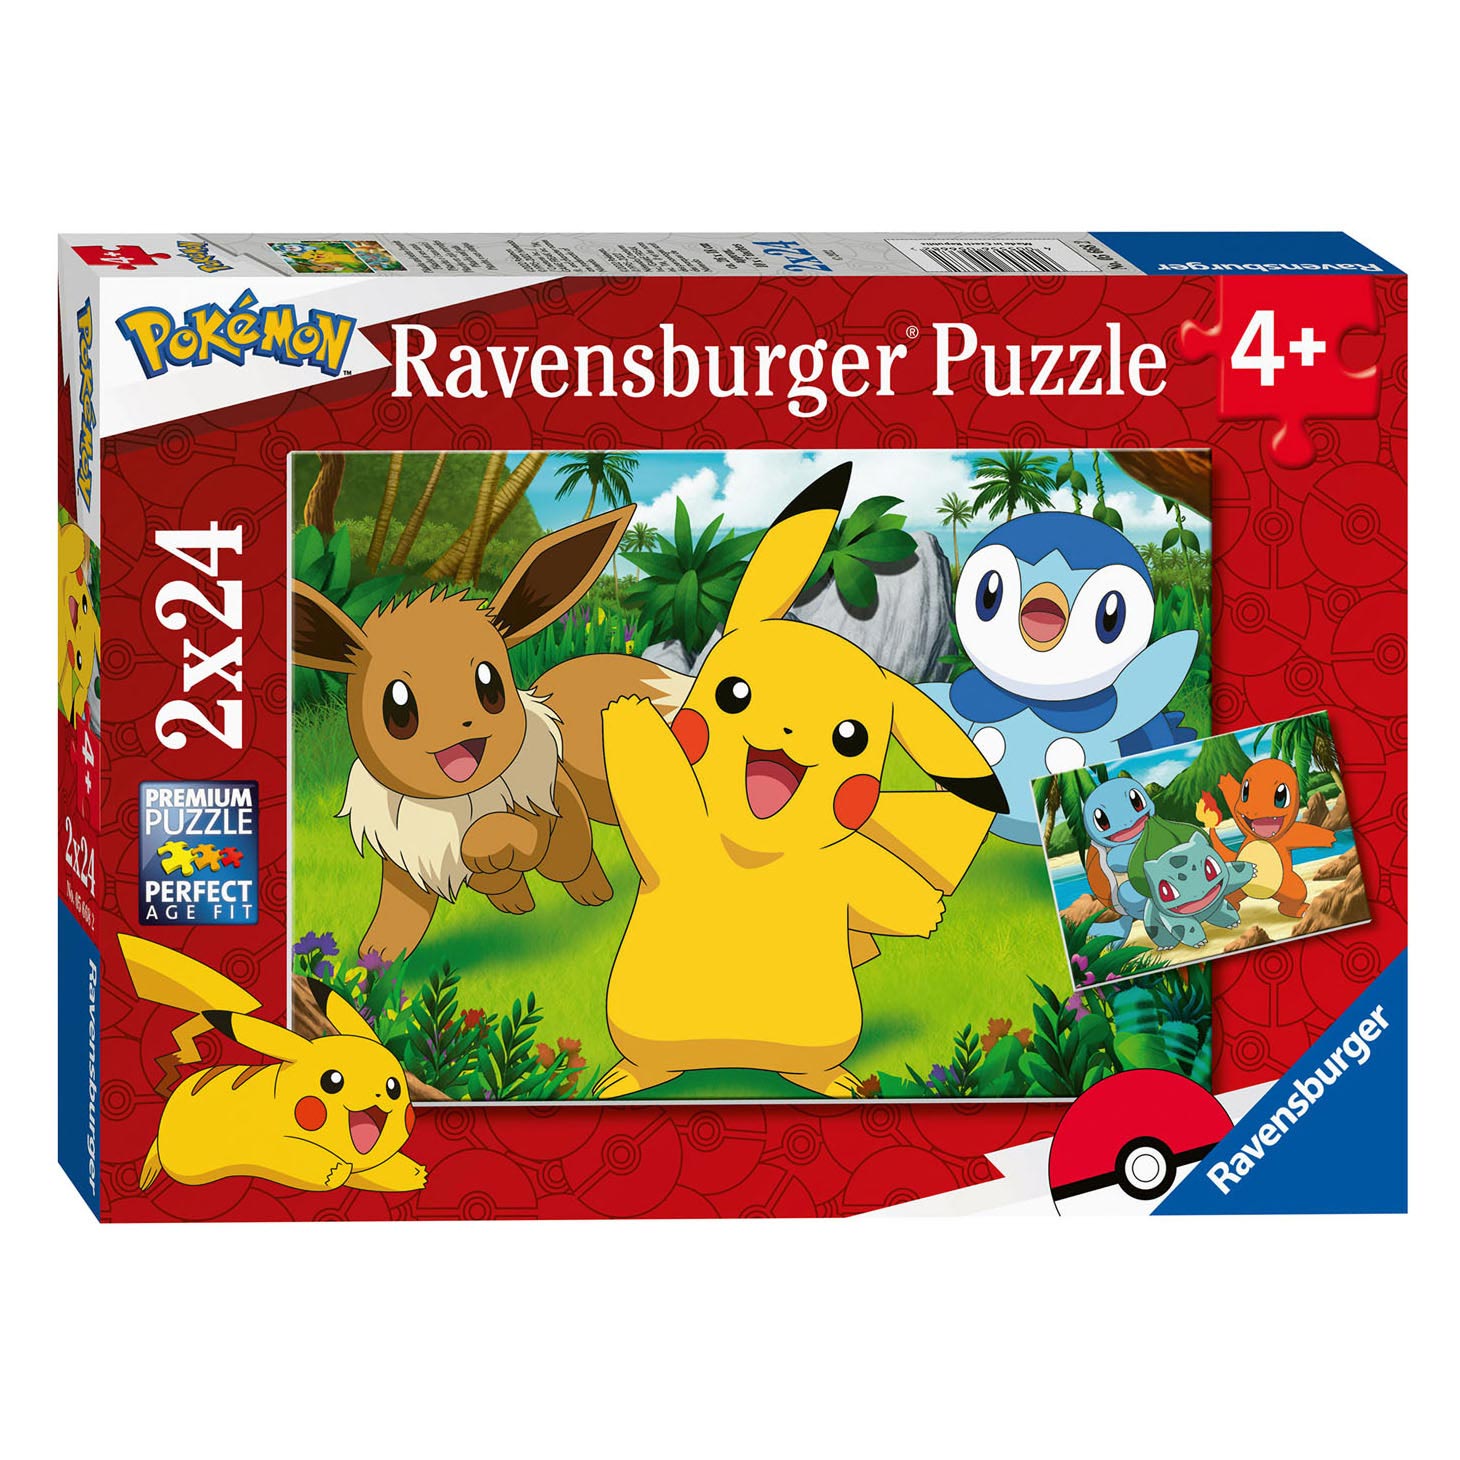 Ravensburger Puzzle - Pikachu und seine Freunde, 2x24 Teile.